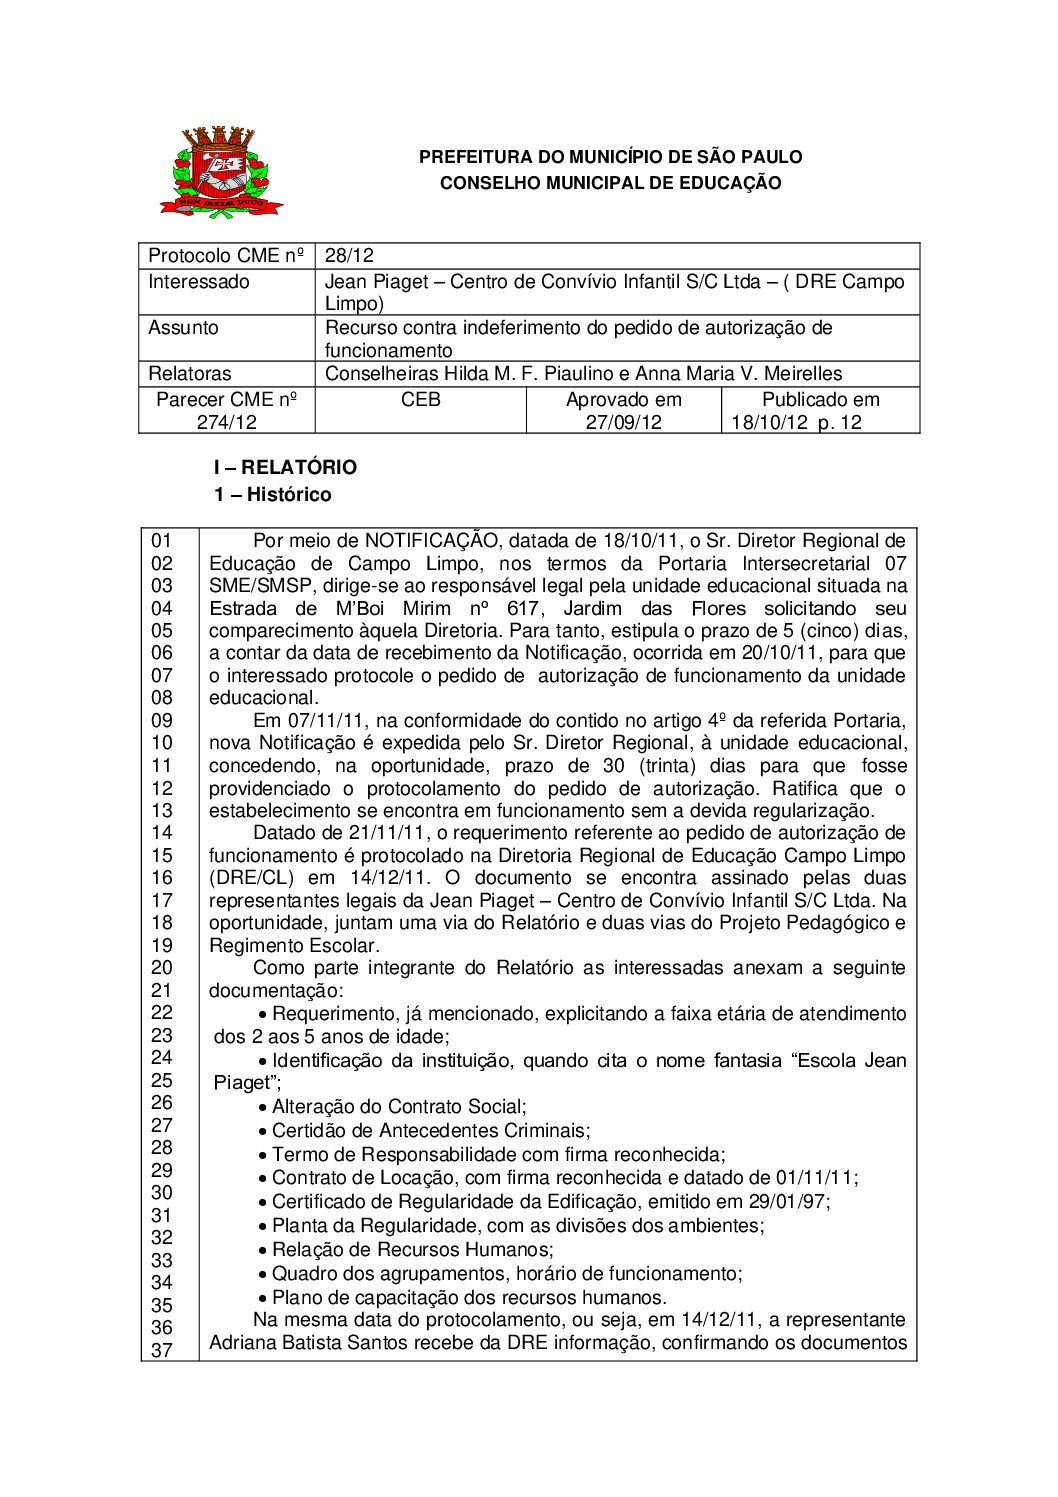 Parecer CME nº 274/2012 - Jean Piaget Centro de Convívio Infantil S/C Ltda – ( DRE Campo Limpo) - Recurso contra indeferimento do pedido de autorização de funcionamento 